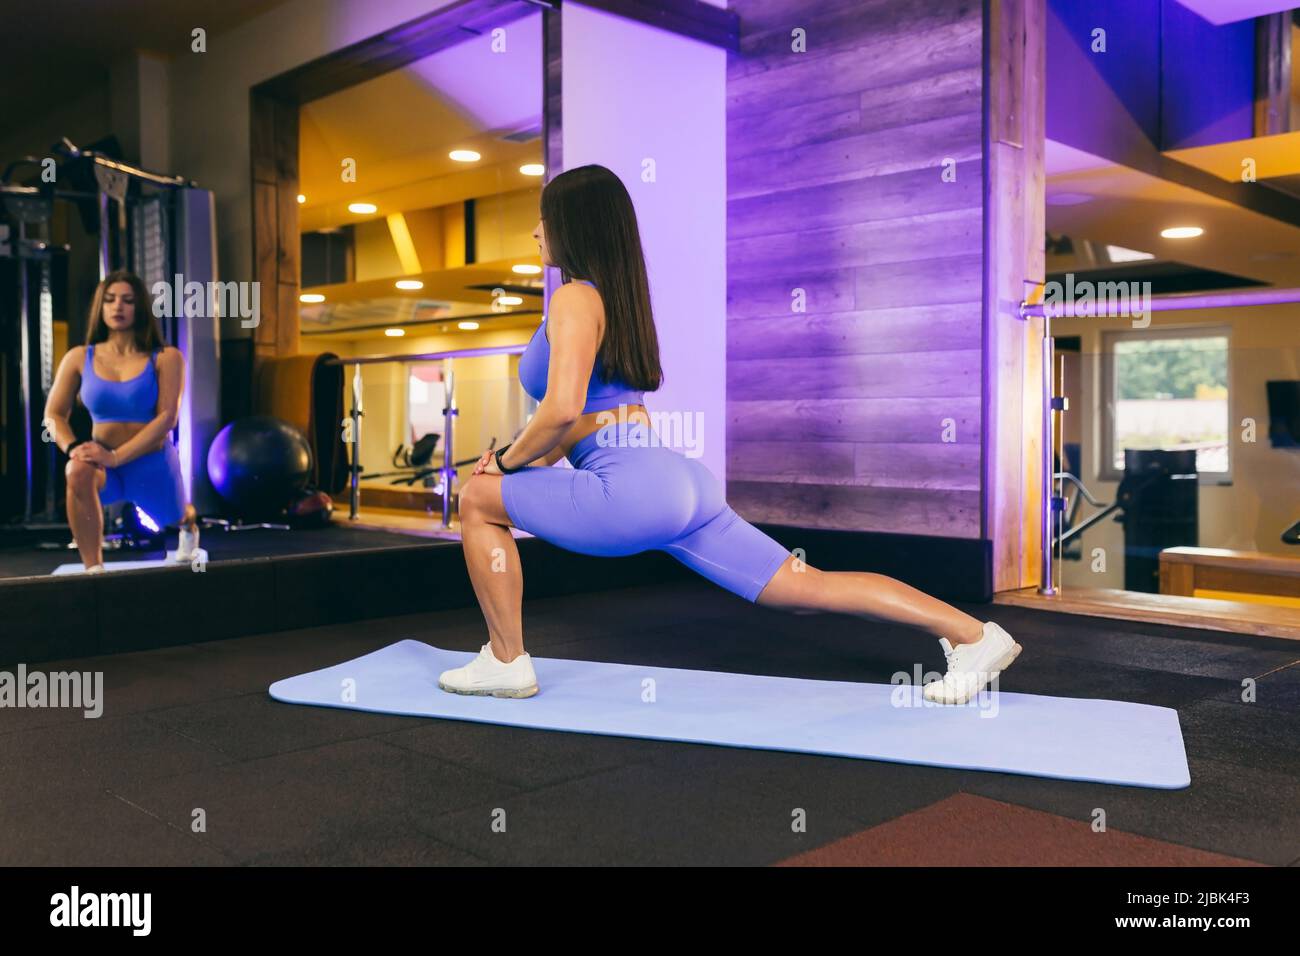 Una chica en el gimnasio hace yoga y fitness en una colchoneta de gimnasia